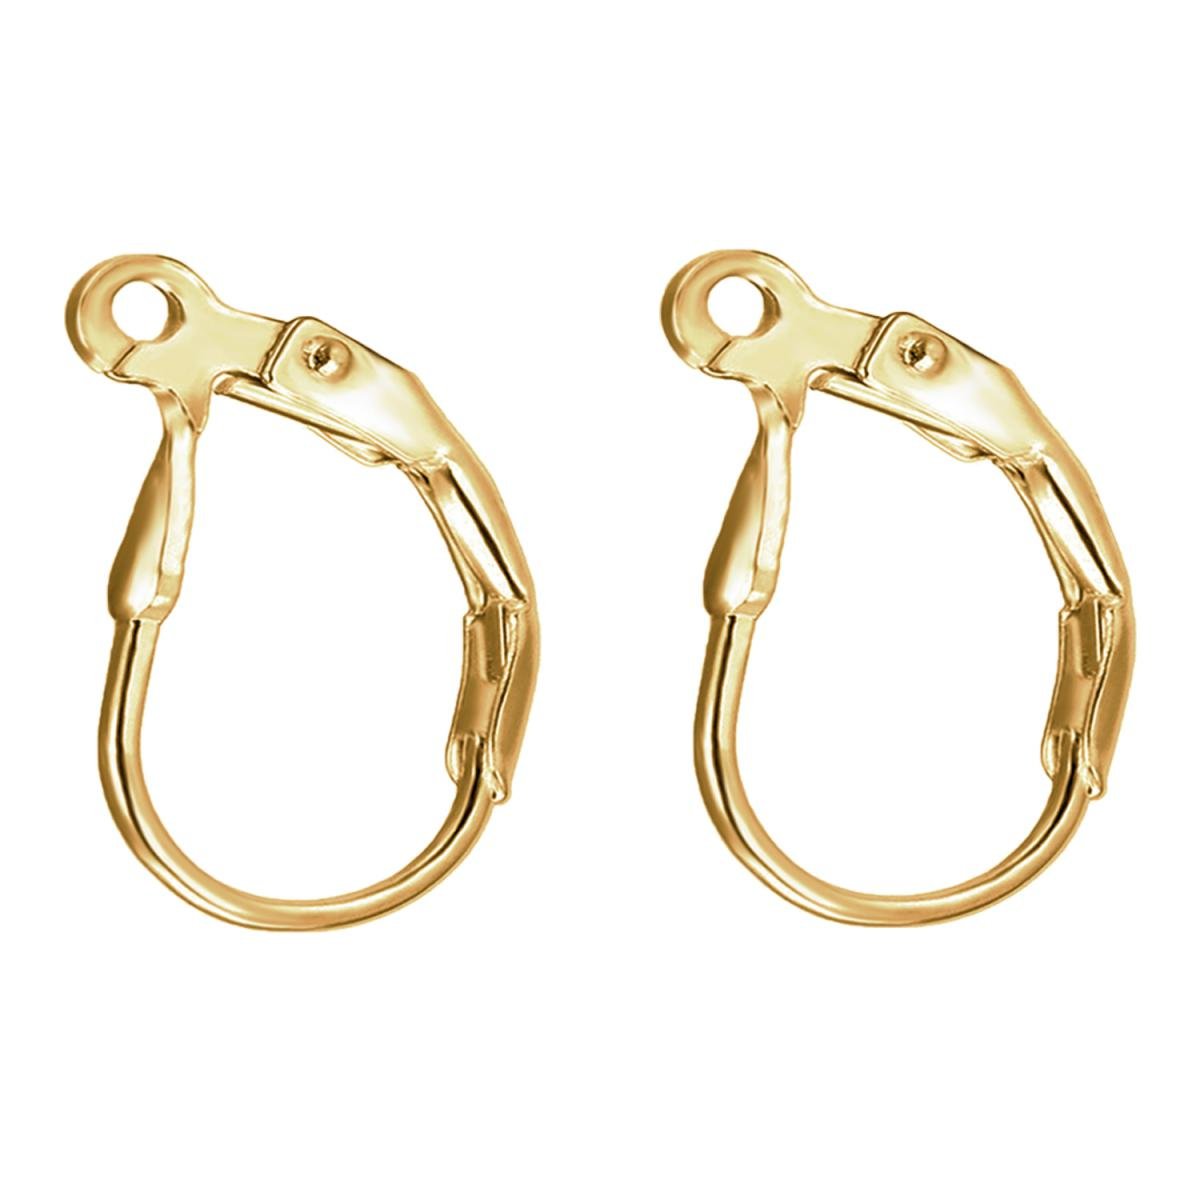 14k Gold Jewelry Findings Wholesale  Earrings Hooks Jewelry Making   Leverback  Aliexpress